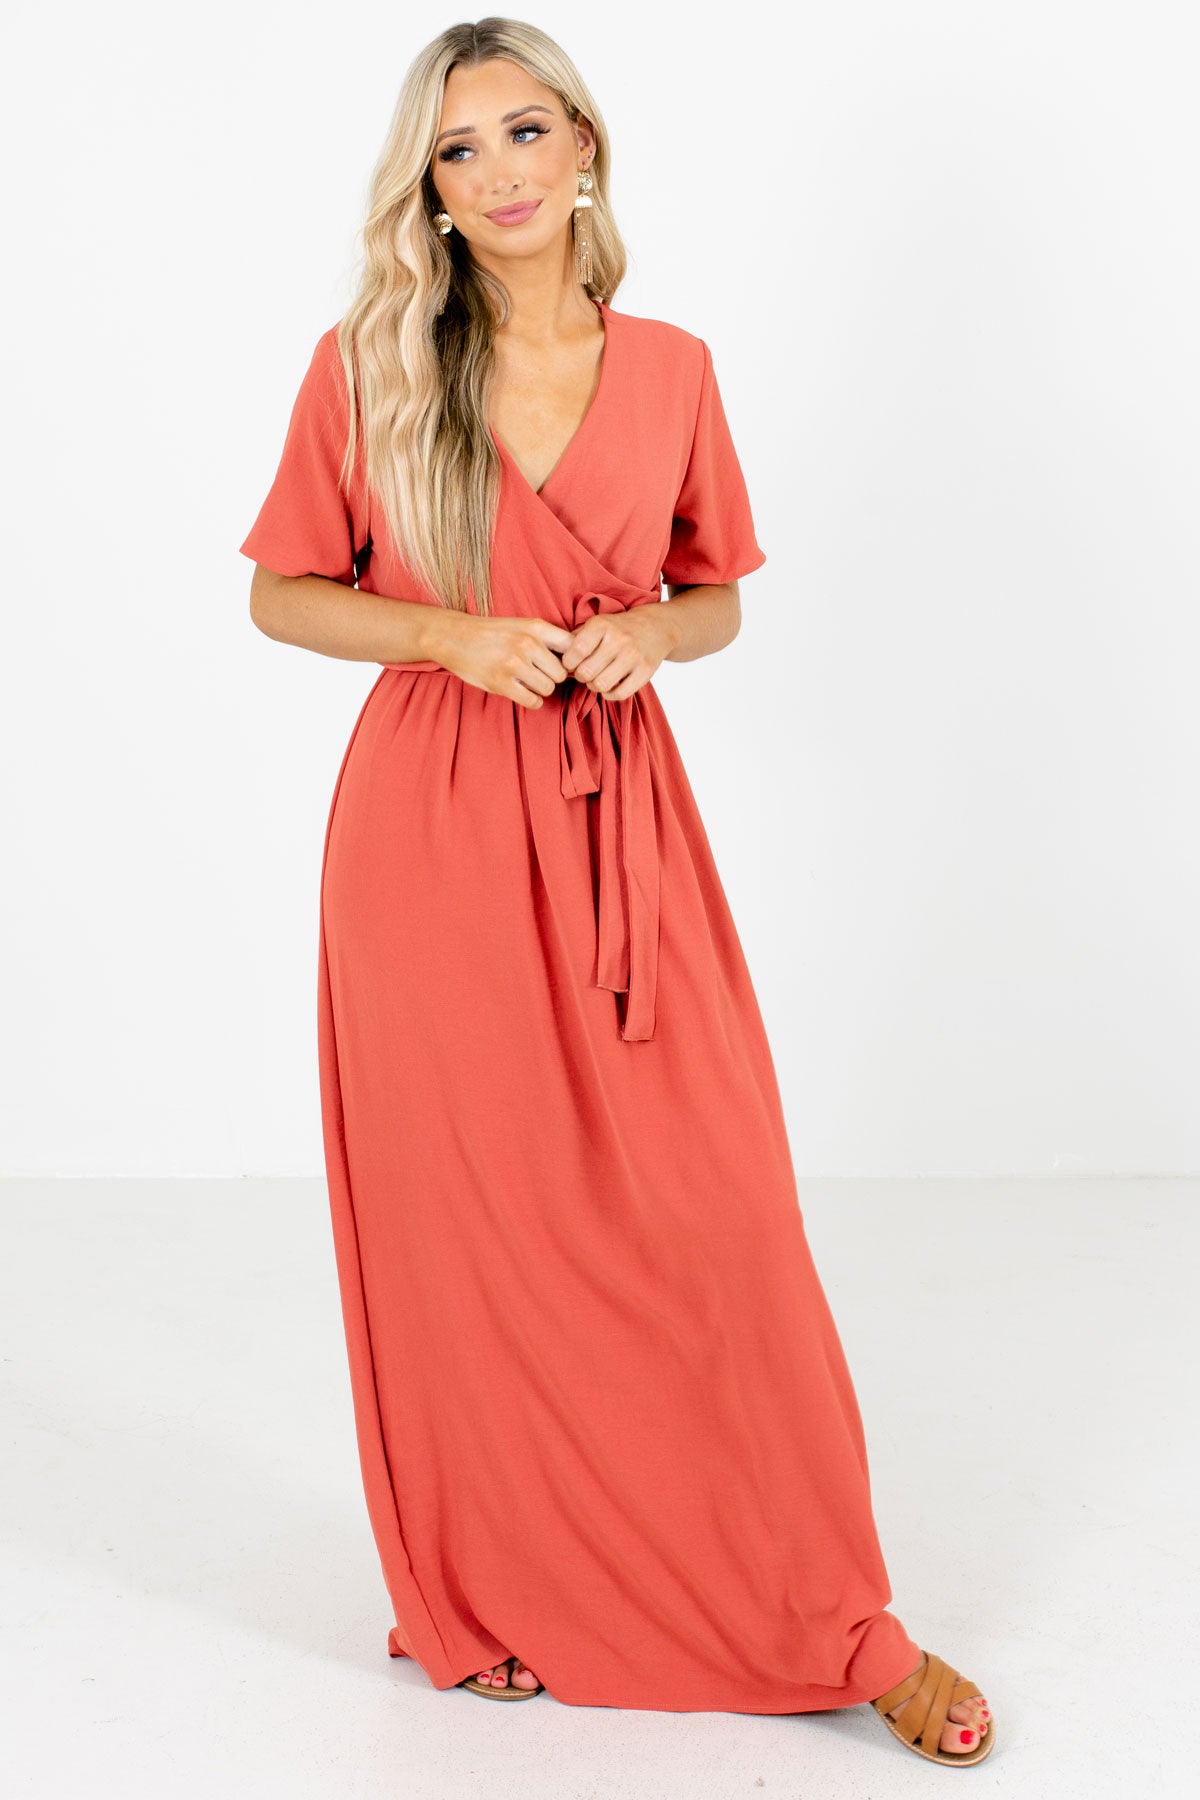 Coral Faux Wrap Style Boutique Maxi Dresses for Women